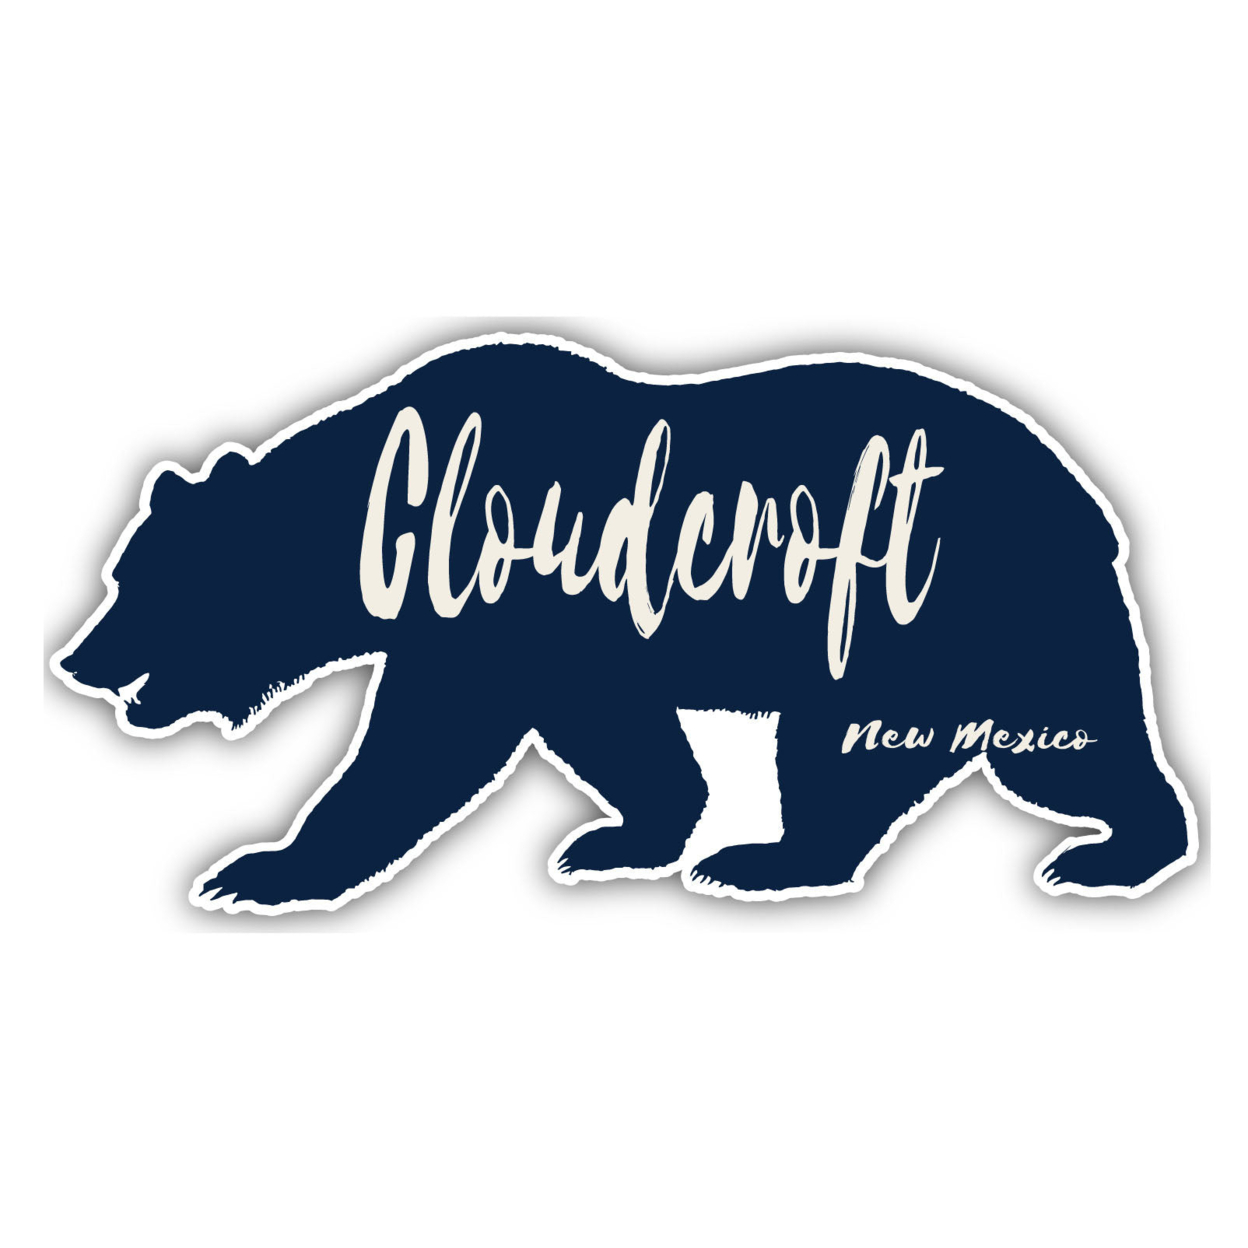 Cloudcroft New Mexico Souvenir Decorative Stickers (Choose Theme And Size) - Single Unit, 4-Inch, Bear